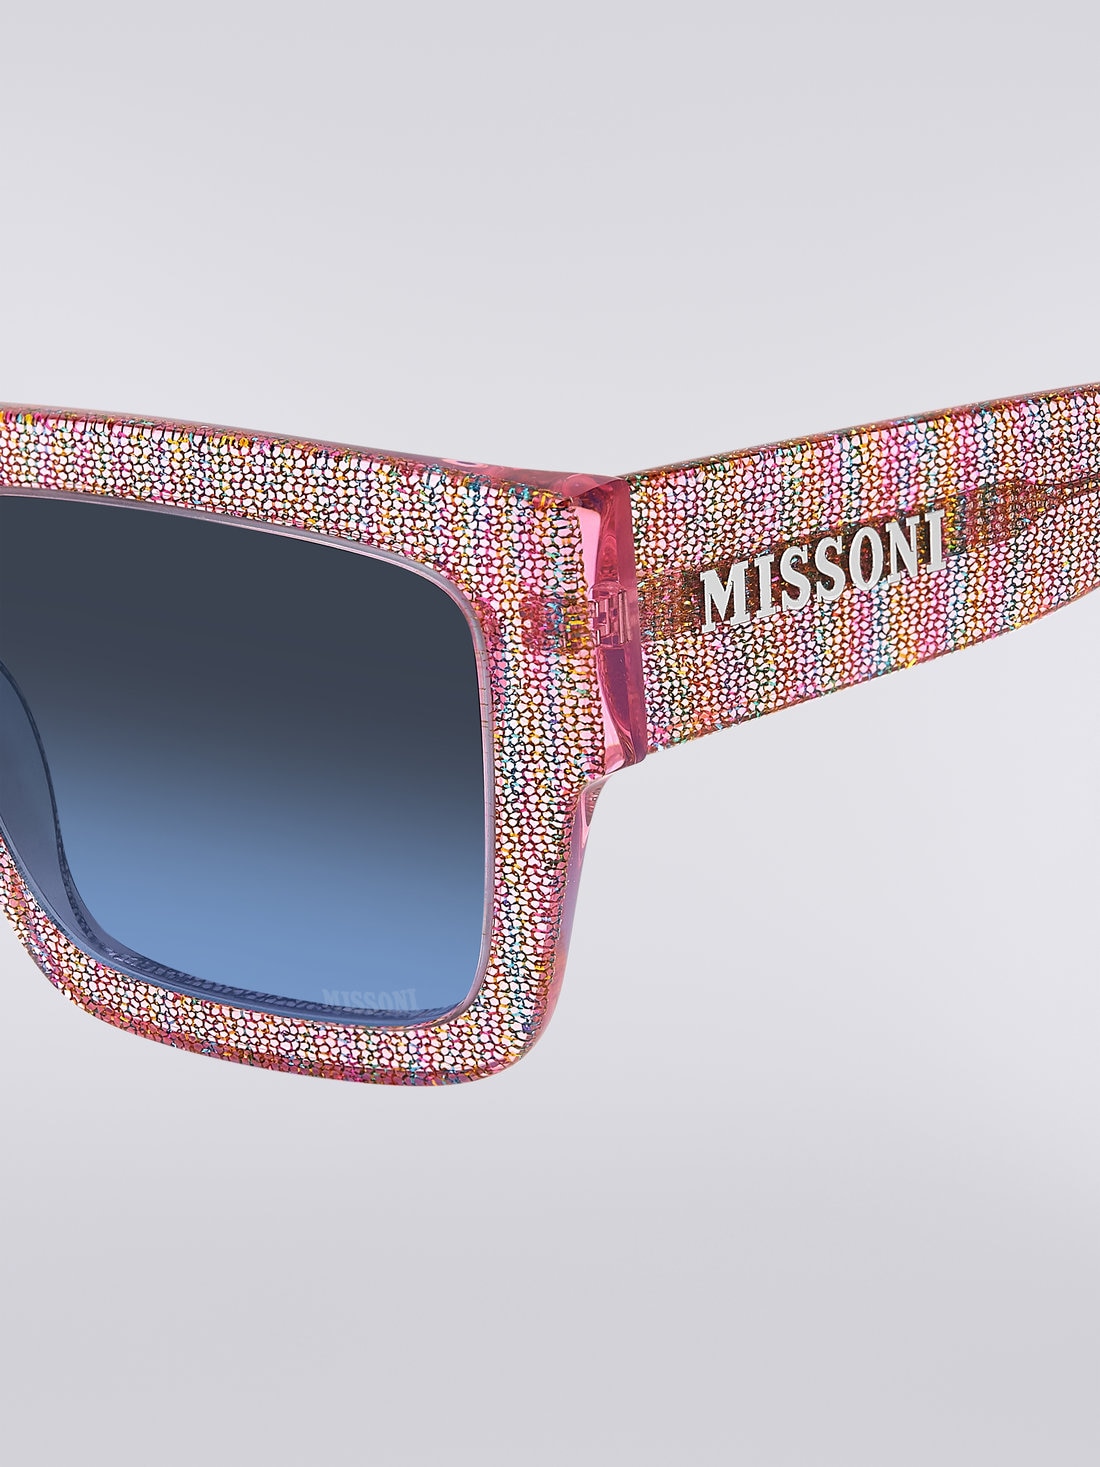 Missoni Dna Acetate Sunglasses, Multicoloured  - 8051575840289 - 3